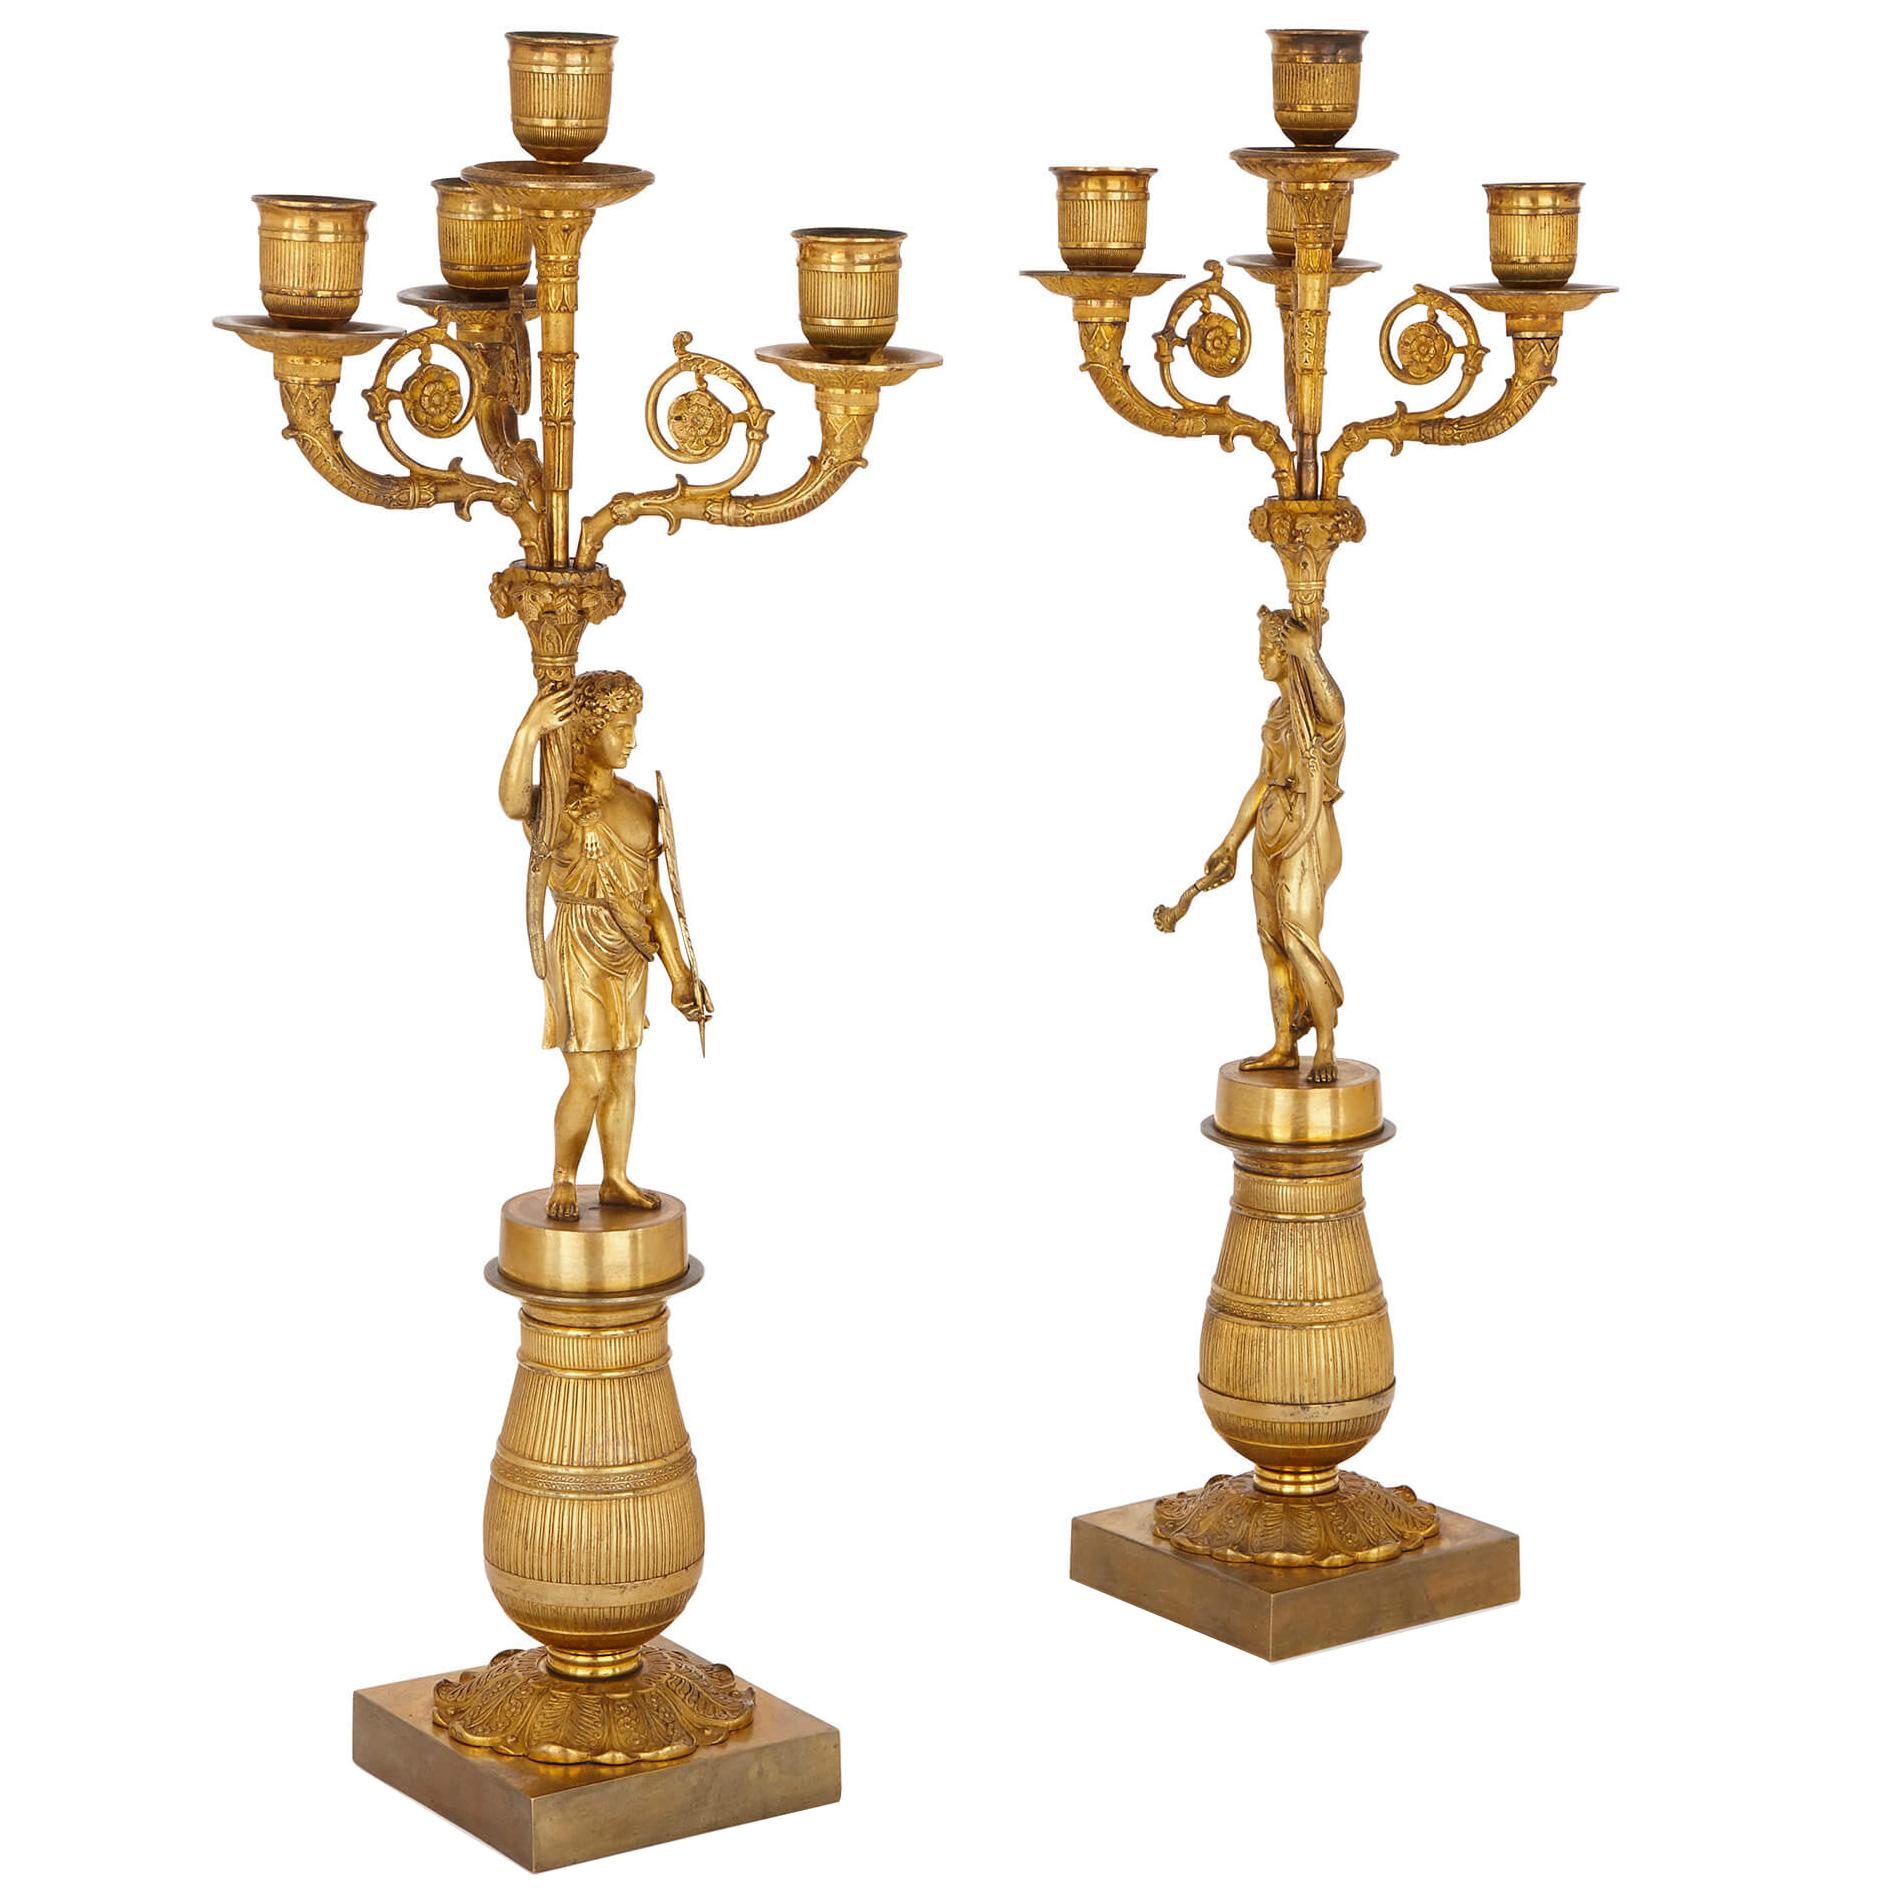 Deux candélabres en bronze doré de style Empire français du début du XIXe siècle